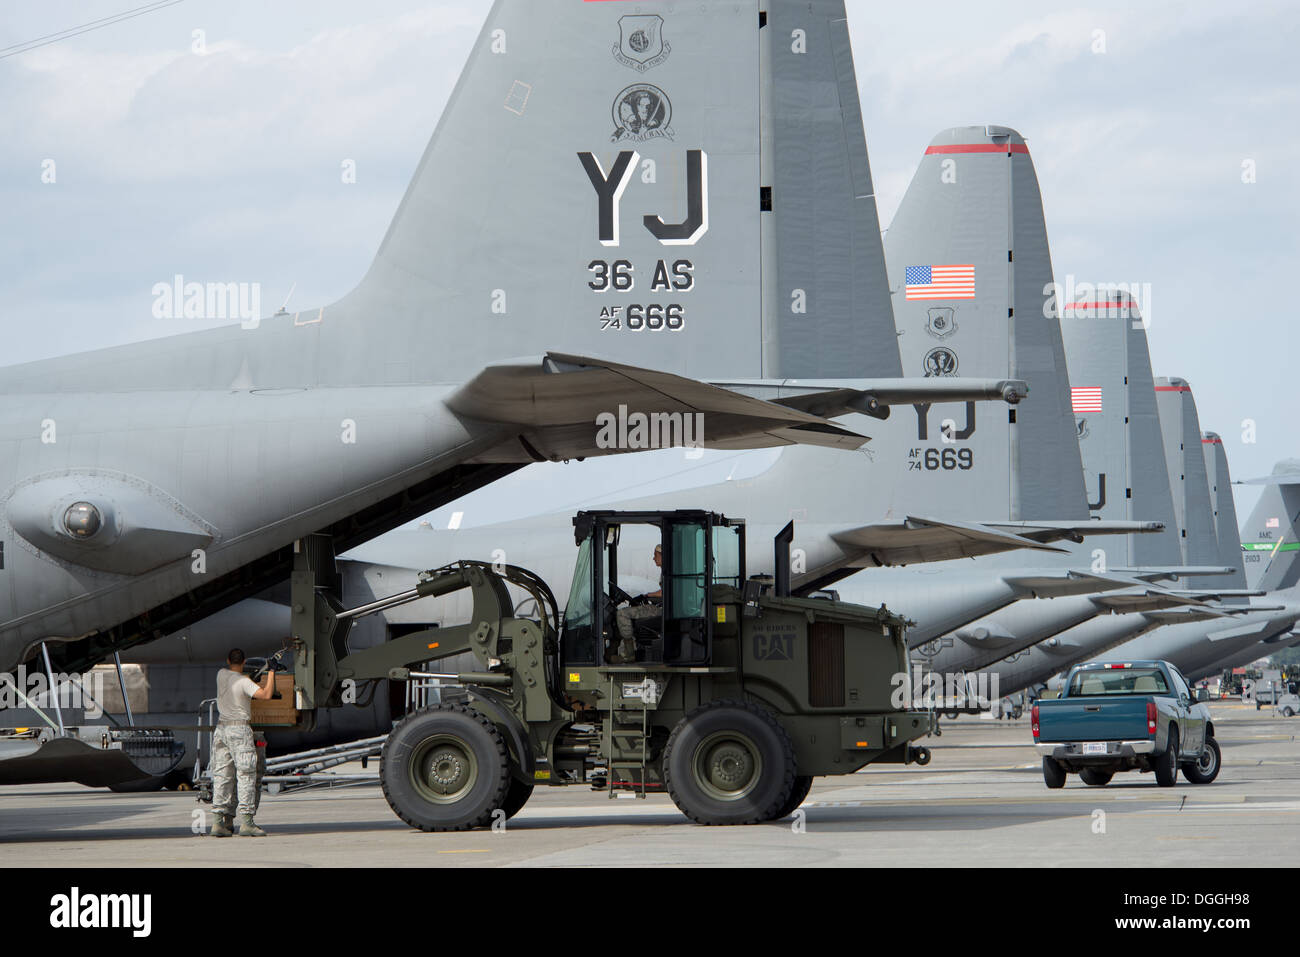 Aviadores de la 374ª Escuadrilla de preparación logística movilidad combate cargar un vuelo de bajo costo, de baja altitud sobre un paquete de carga Hércules C-130 en la Base Aérea de Yokota, Japón, el 8 de octubre, 2013. Aviadores de la 374ª LRS mantener y preparar el sistema de suministro de carga aérea Foto de stock